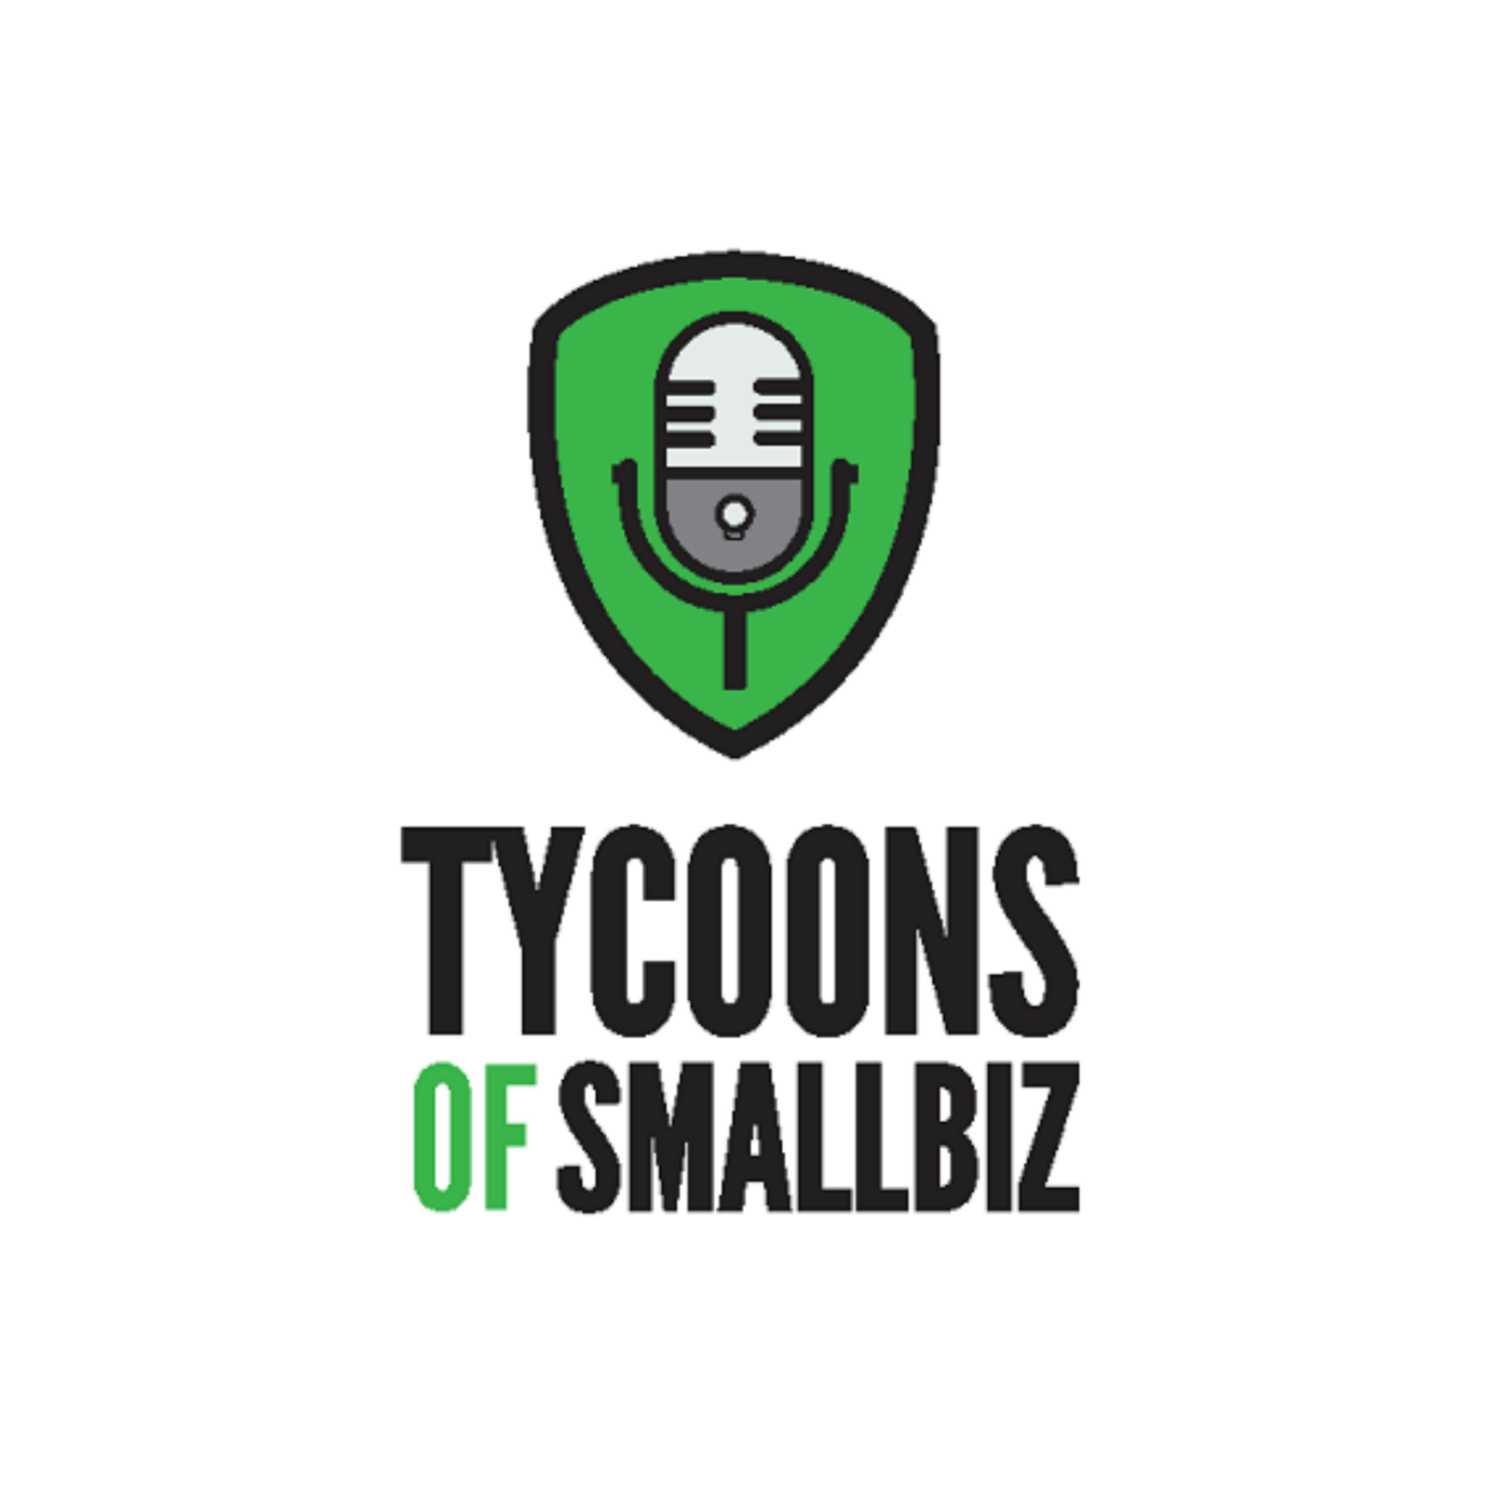 Tycoonsofsmallbiz - Podcast, Radio Program, Apple Podcast